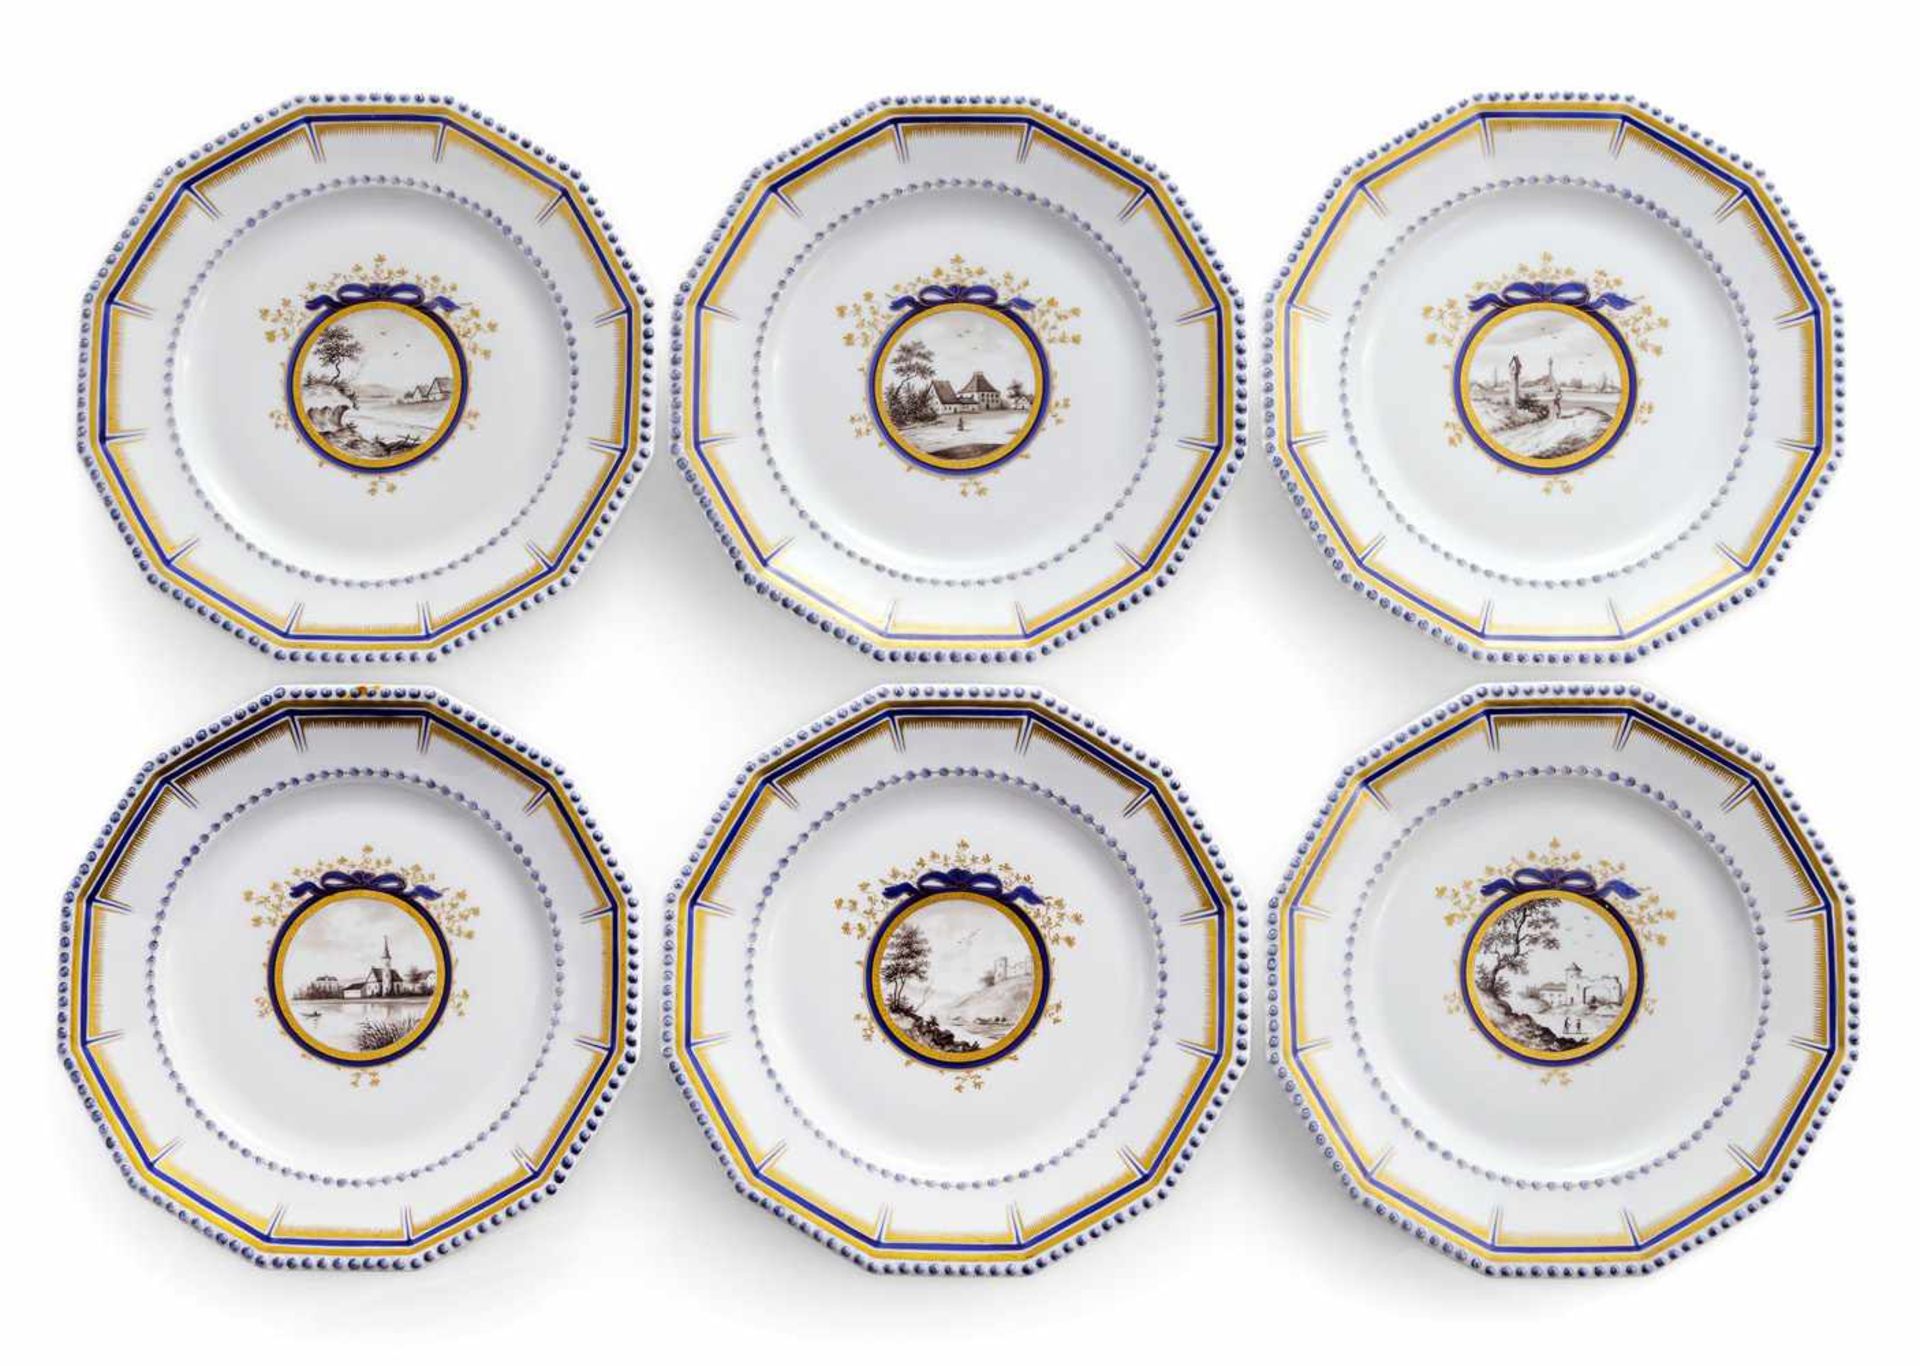 Sechs Kuchen- und sechs Menuteller aus dem Bayerischen Königsservice Nymphenburg, 20. Jahrhundert D. - Image 2 of 3